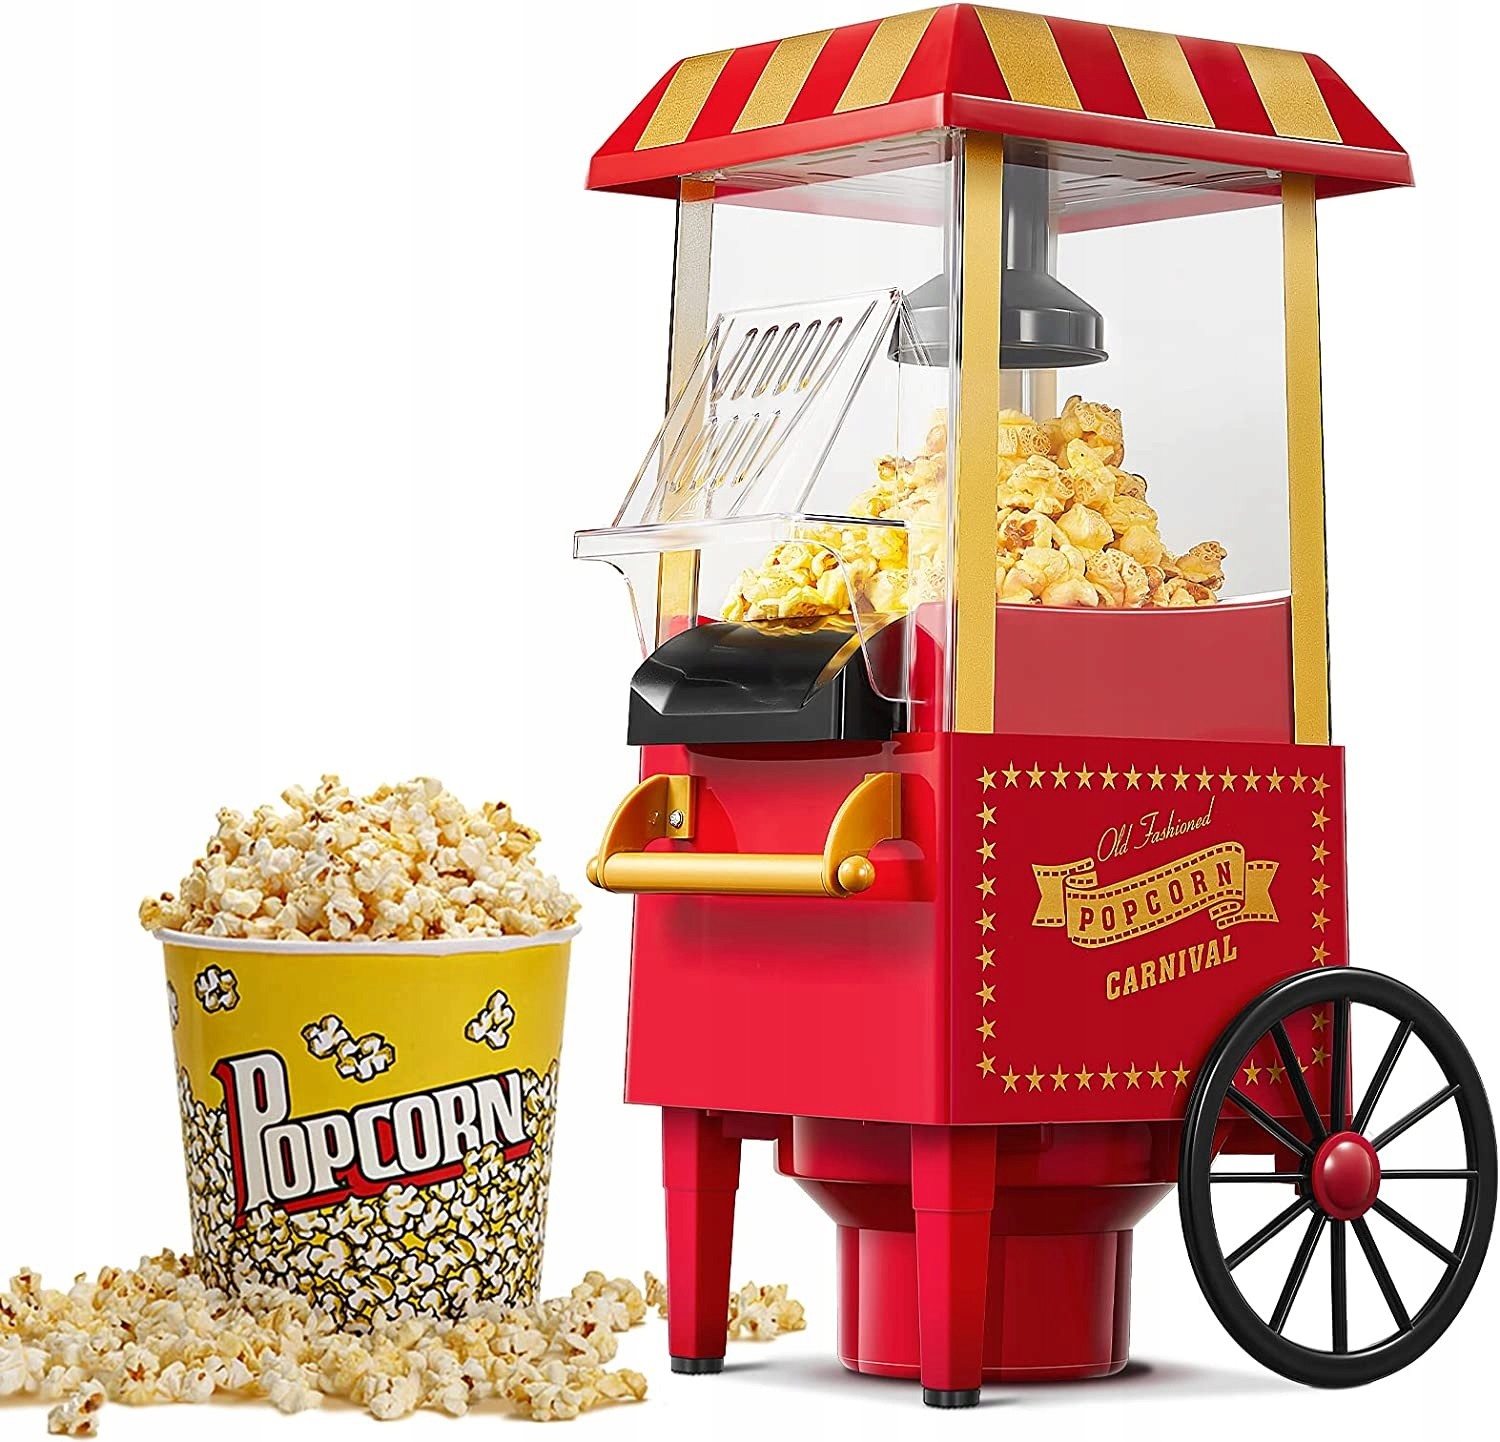 Popcornovač retro kočárek Aicook BJX-B009 červený 1200 W